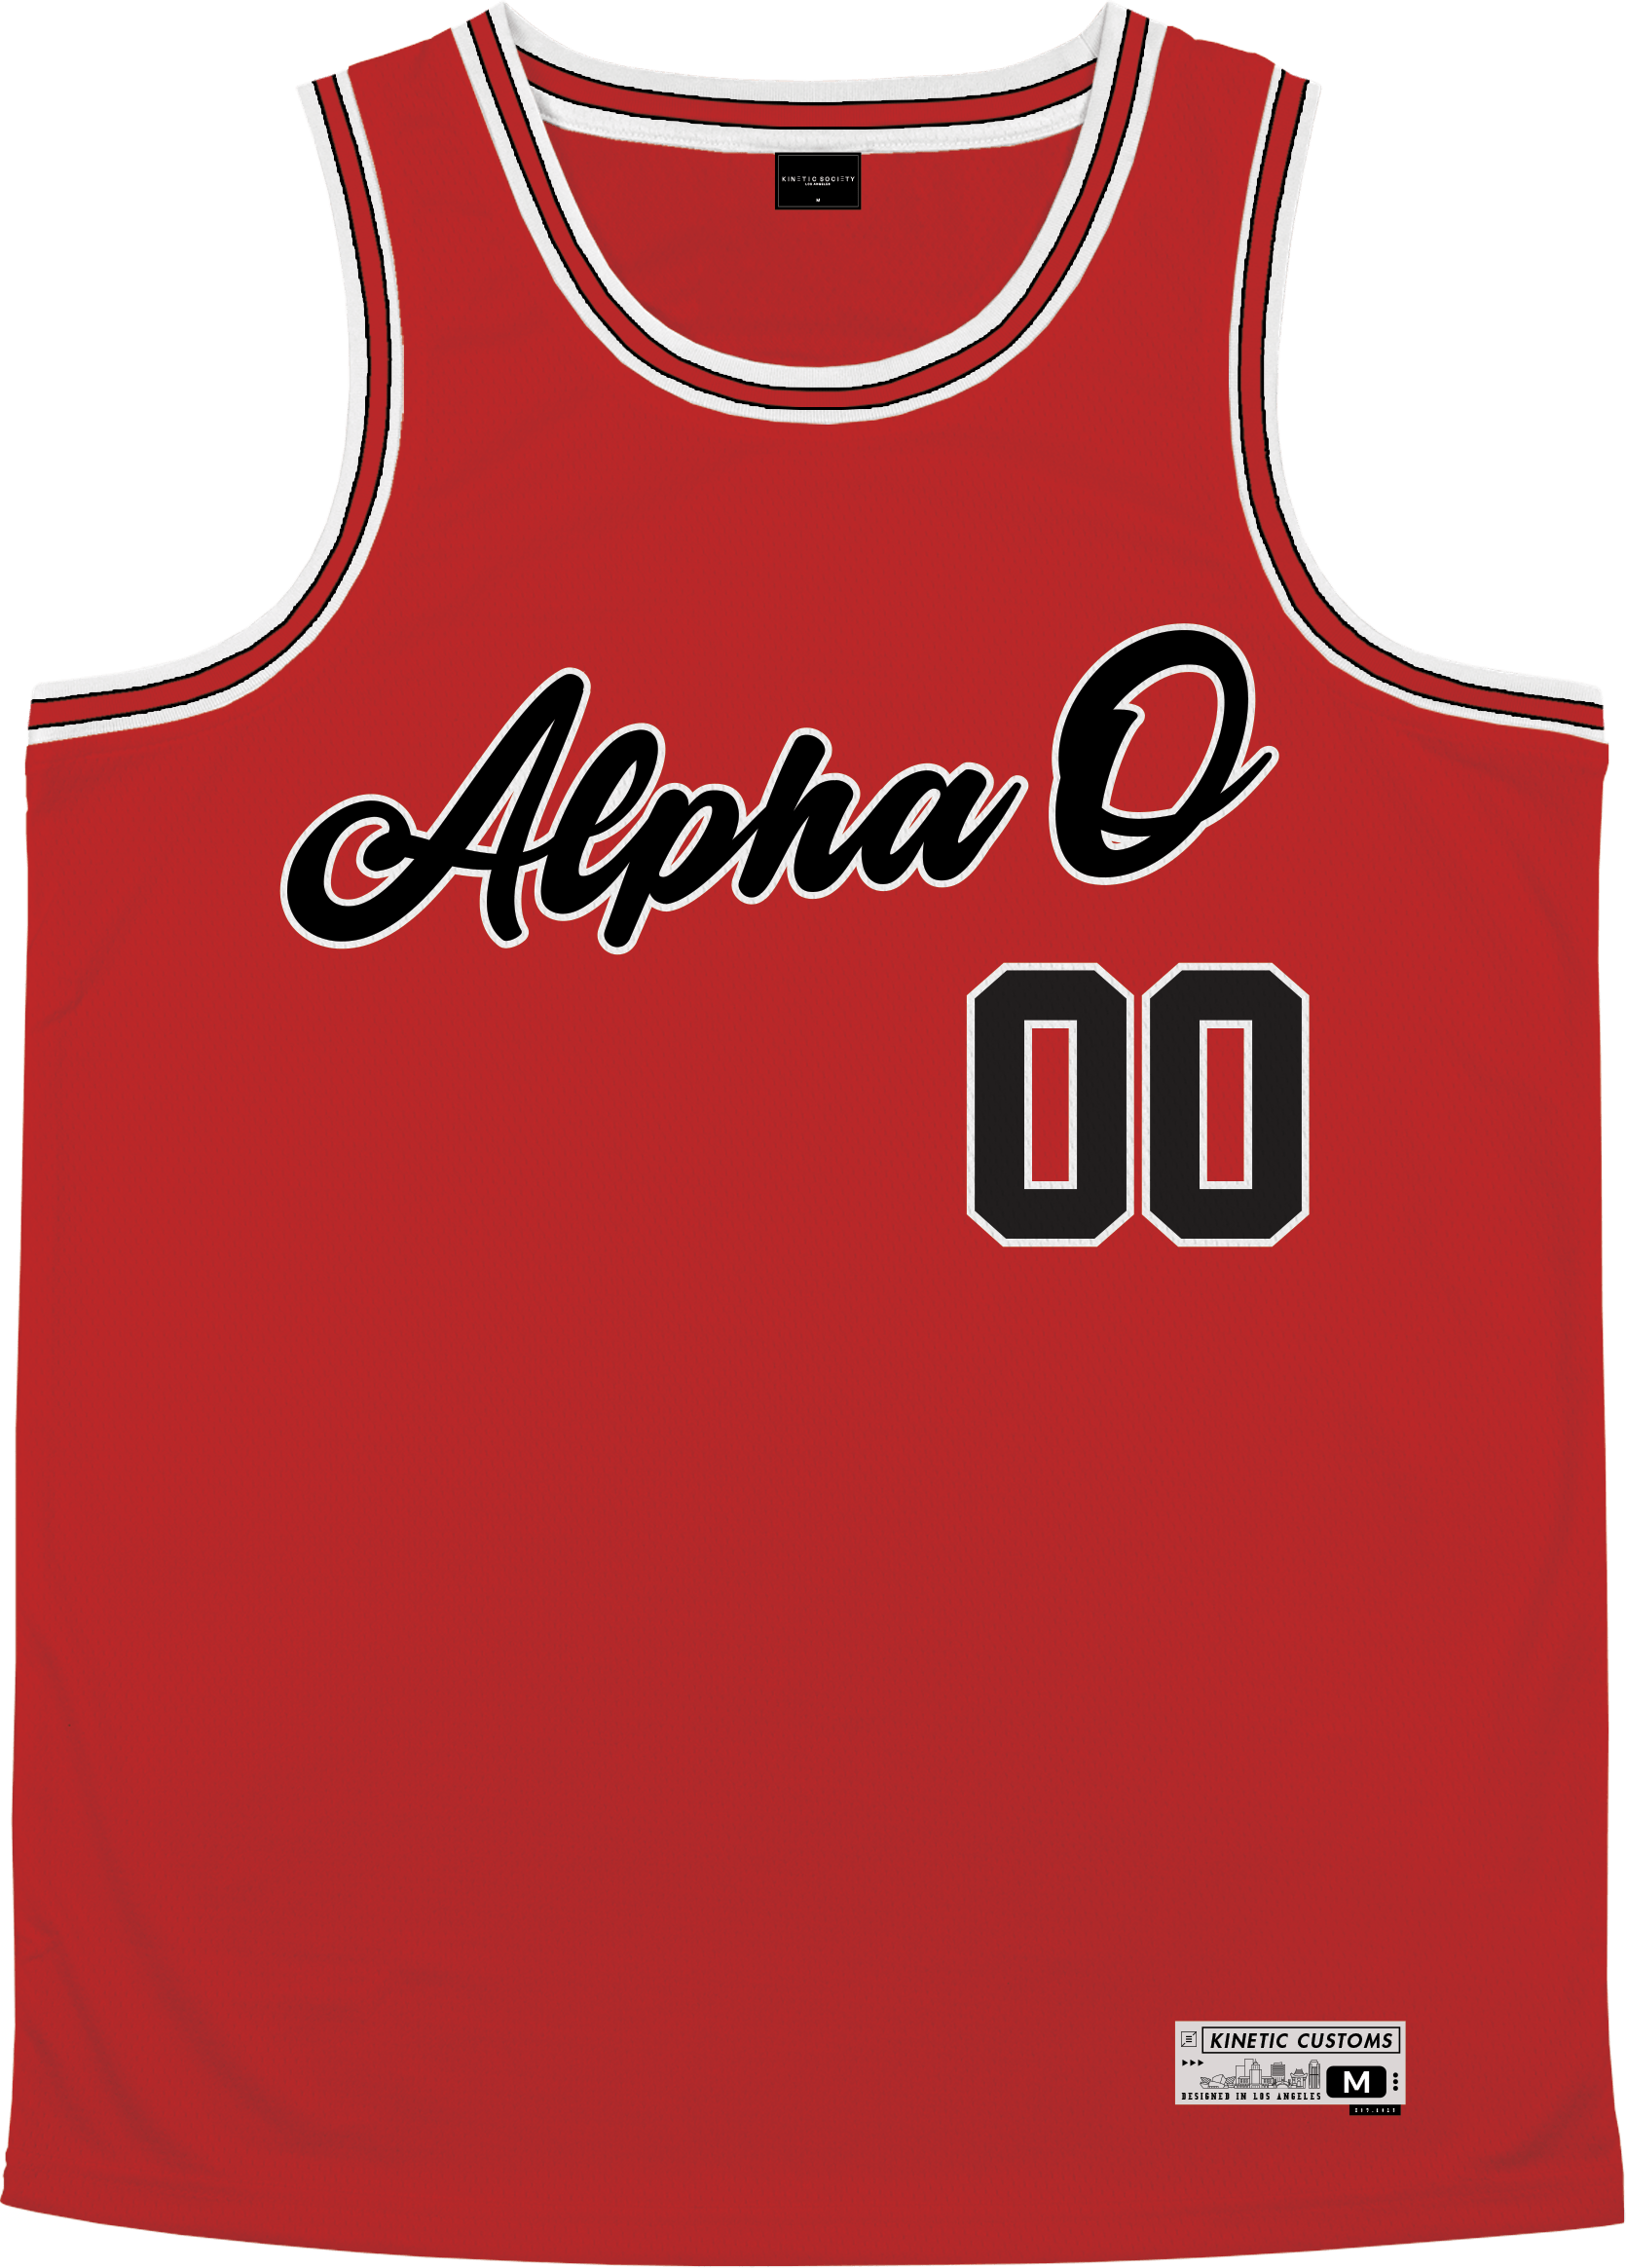 Alpha Omicron Pi - Big Red Basketball Jersey Premium Basketball Kinetic Society LLC 